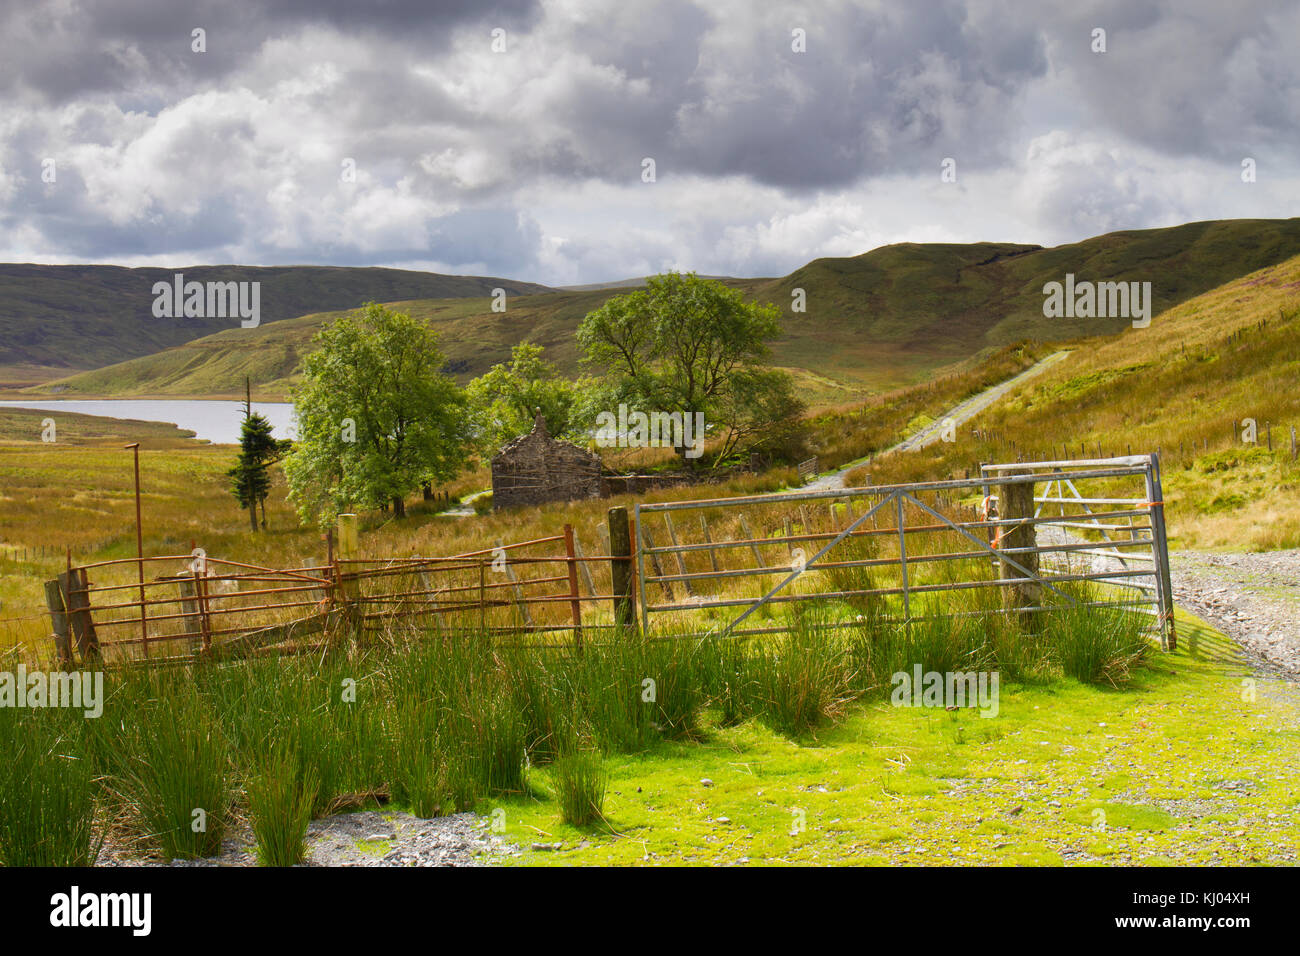 Landschaft mit einer zerstörten Bauernhauses und Bergsee in Moor Lebensraum. Bugeilyn Nature Reserve, Powys, Wales. September. Stockfoto